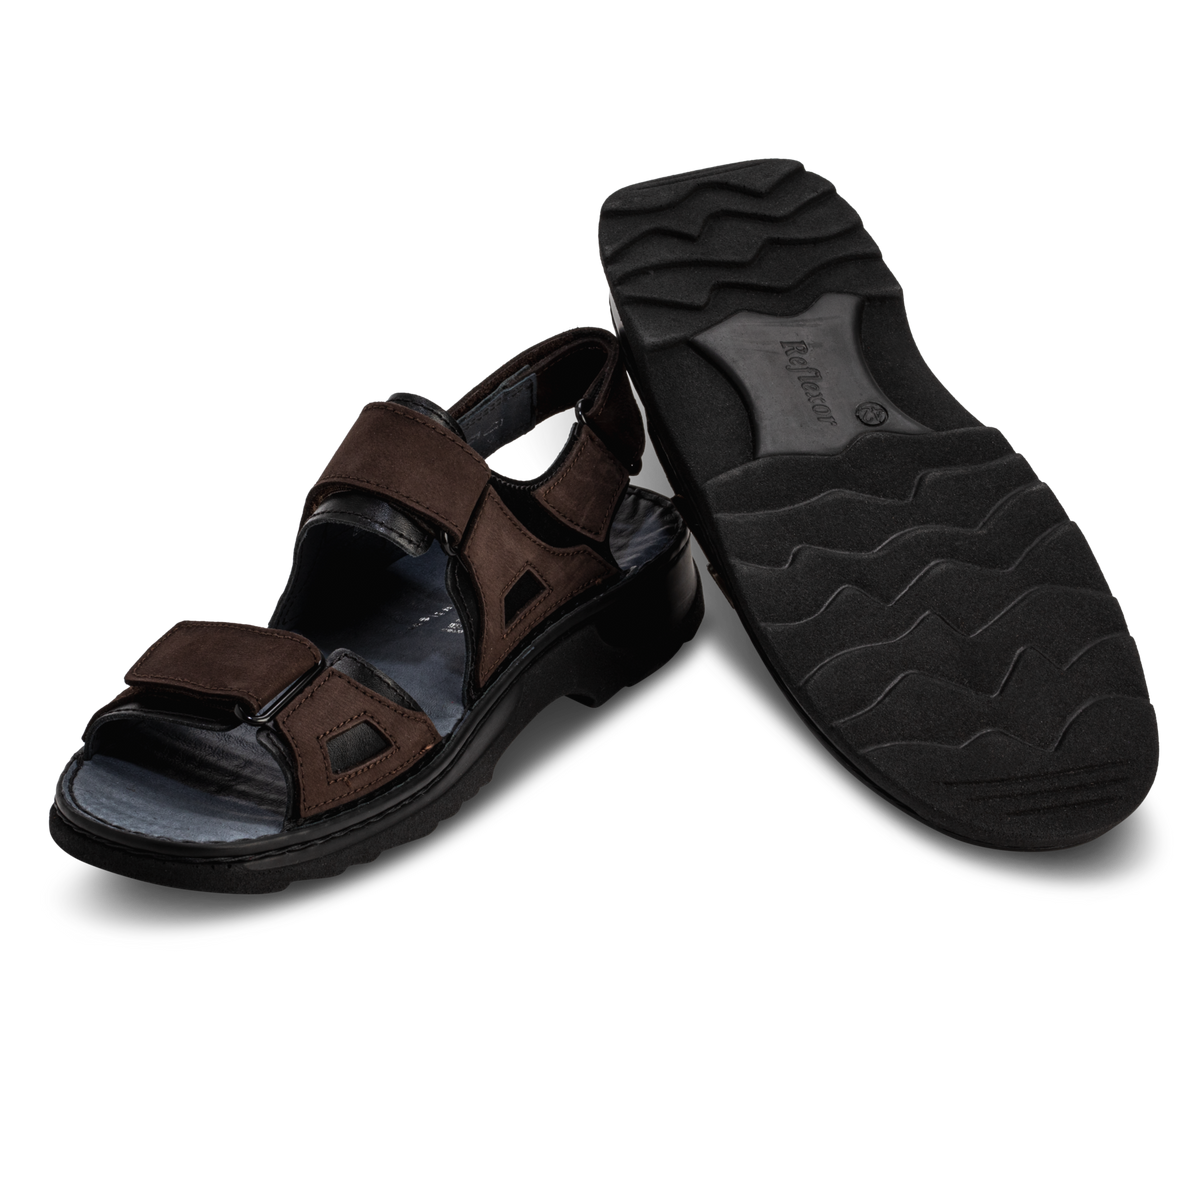 sportieve sandalen nubuckleer zwart/donkerbruin